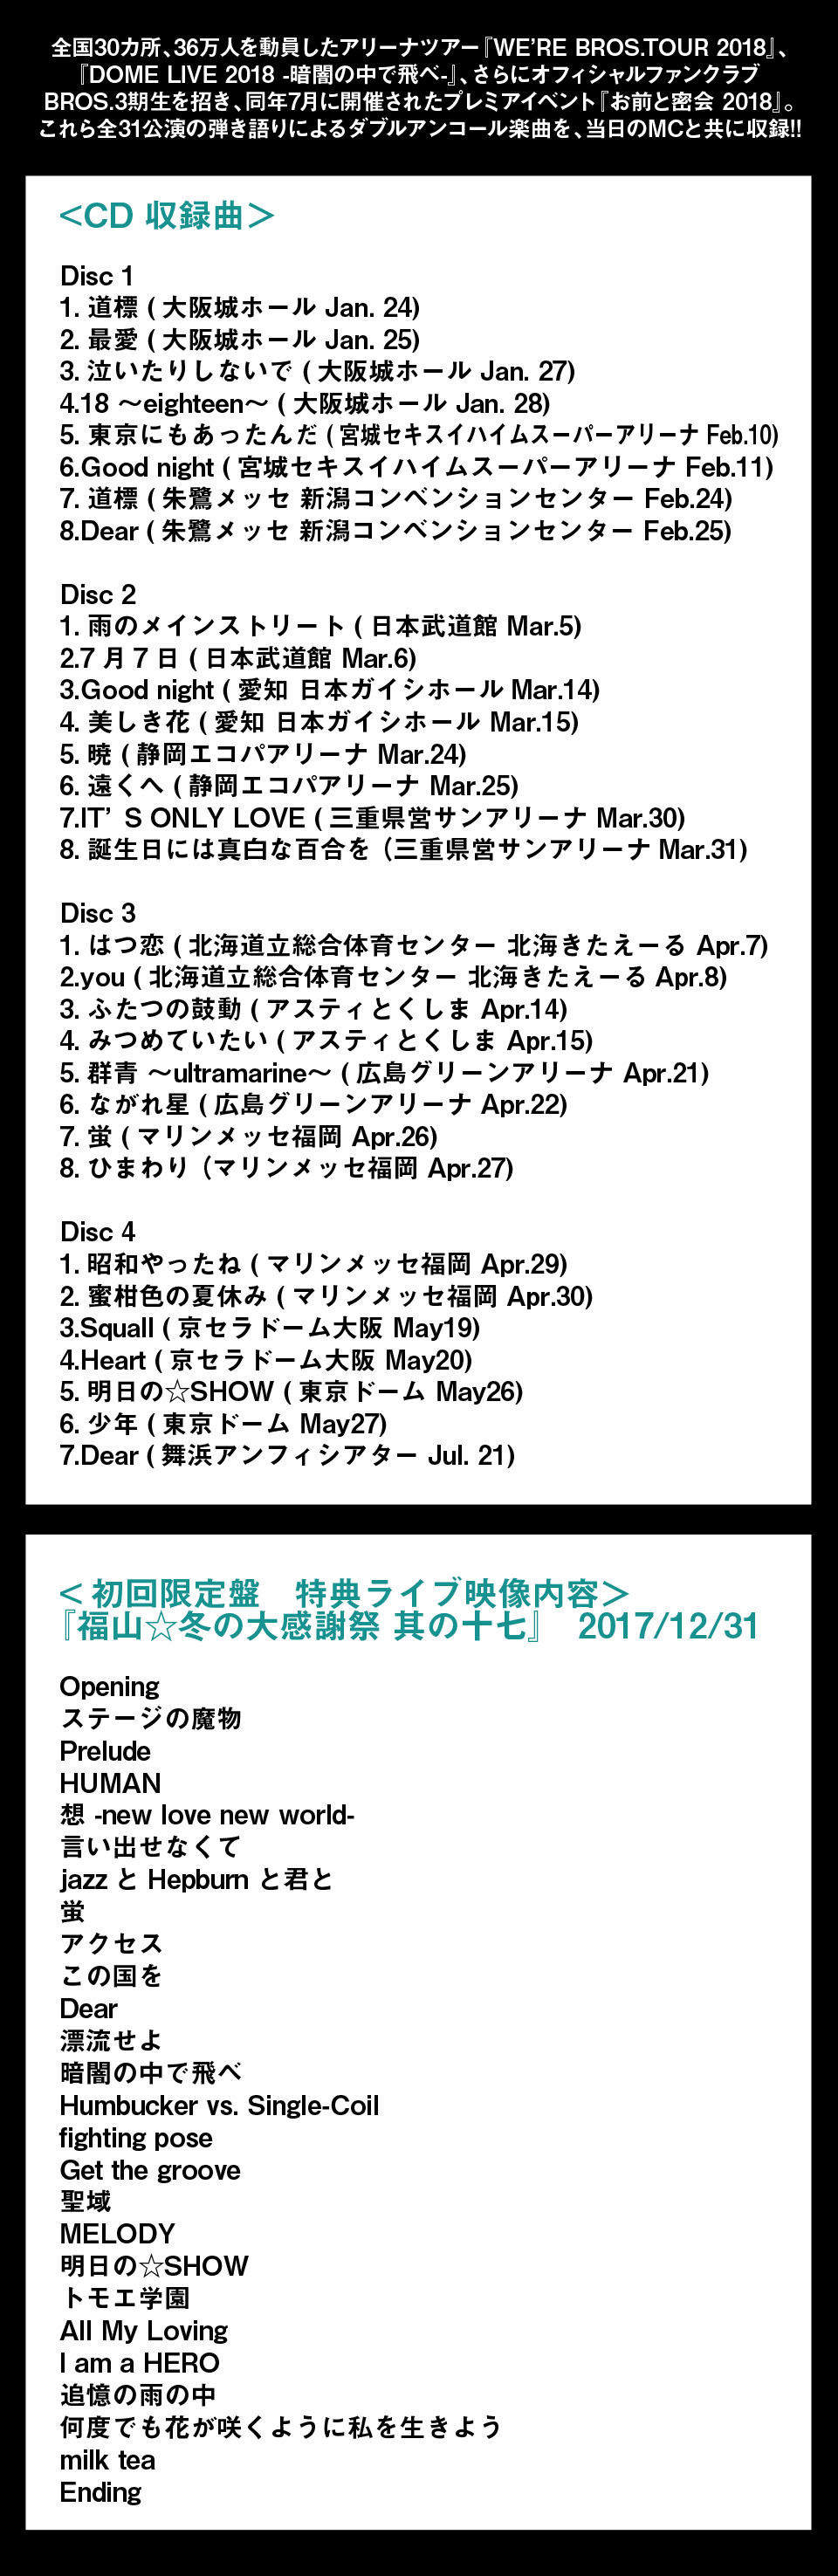 エディオンネットショップ ユニバーサルミュージック Pocs913 福山雅治 Double Encore 初回限定盤 Blu Ray Cd Blu Ray